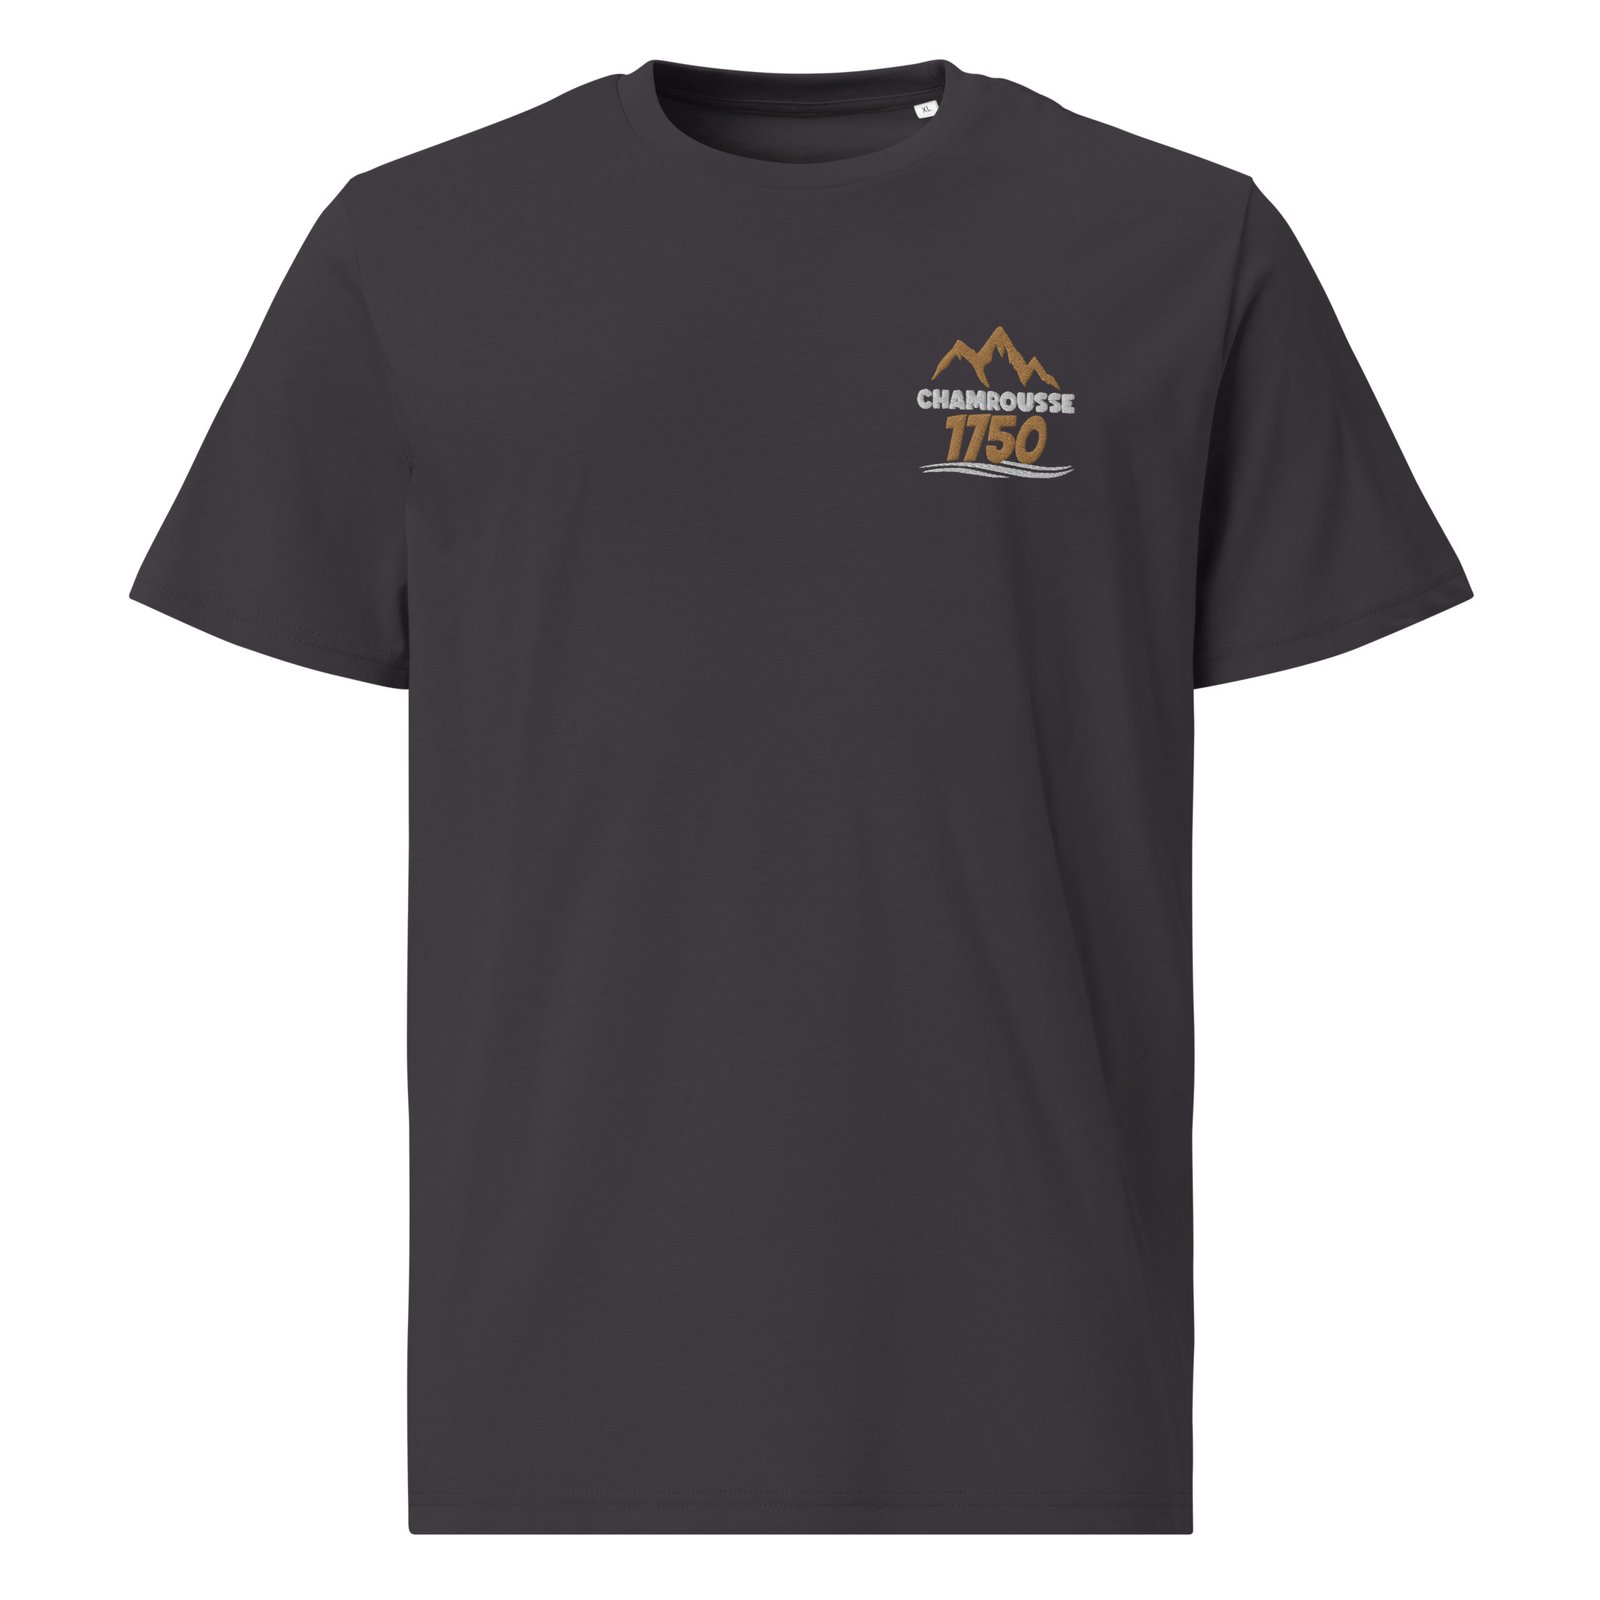 T-shirt montagne personnalisé brodé